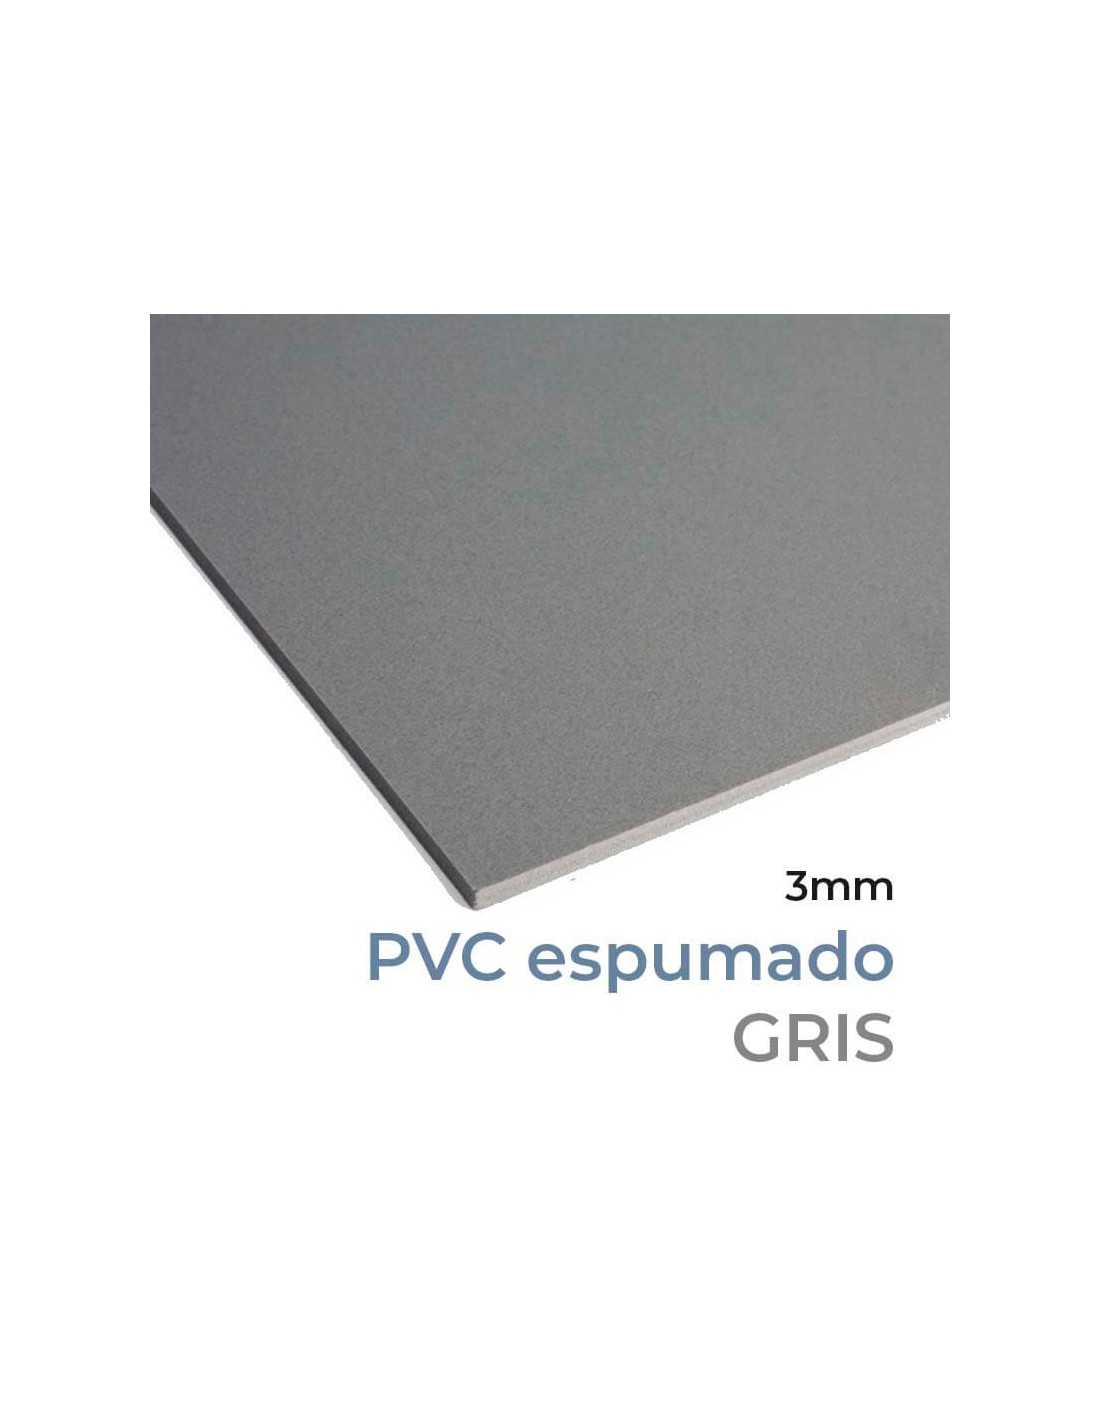 PVC Forex® espumado, GRIS, 3mm grosor